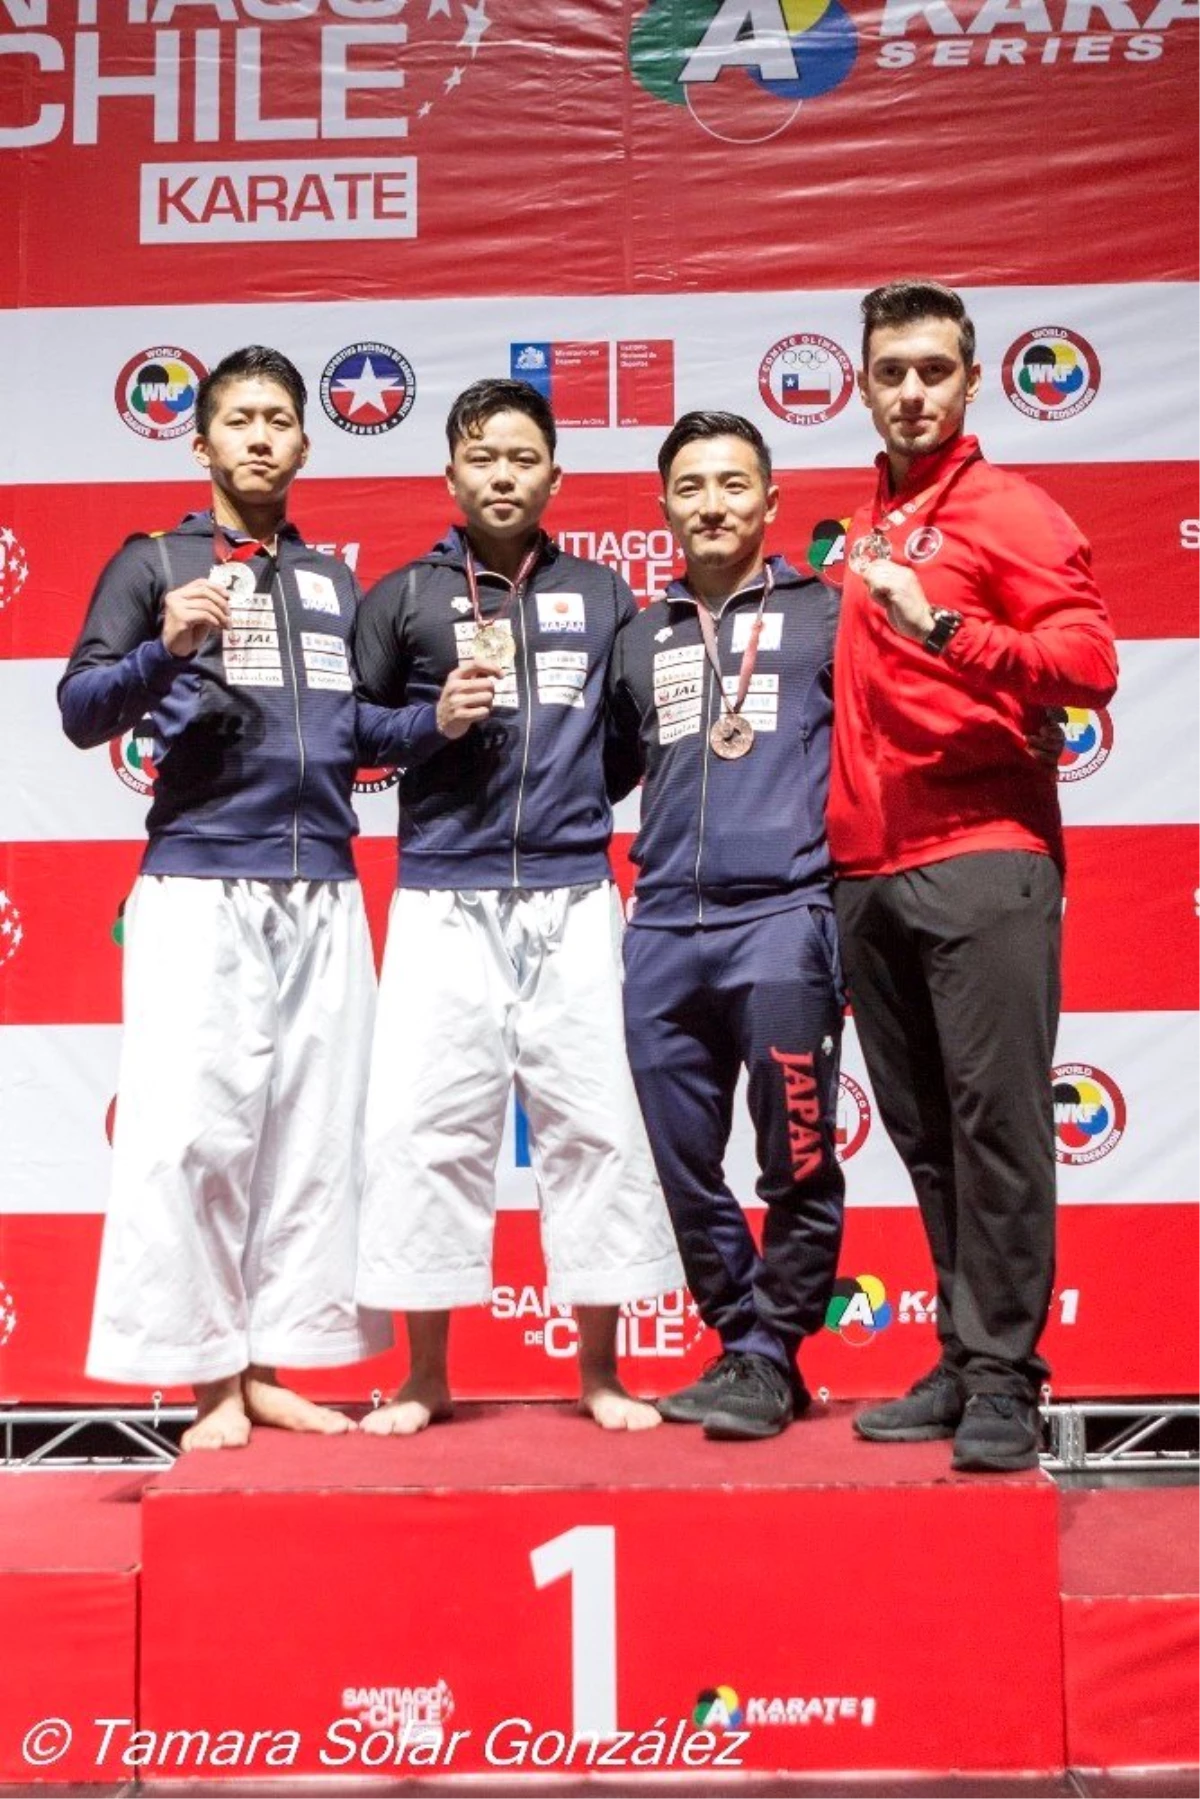 Milli karateciler kapanışı 3 altın madalya ile yaptı